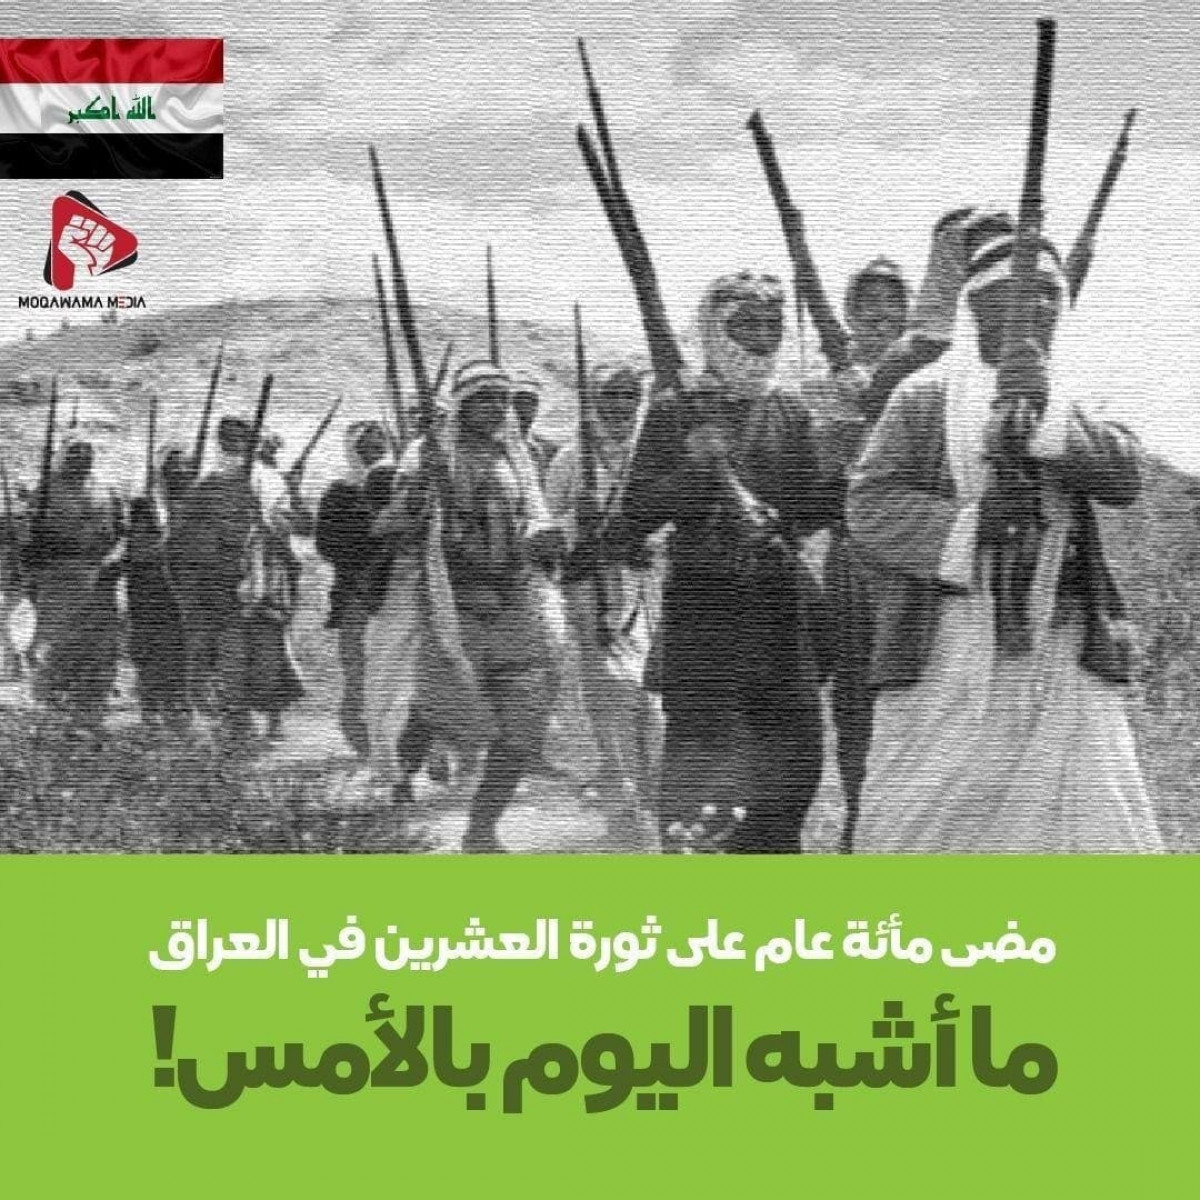 ممضی مأئة عام علی ثورة العشرین في العراق